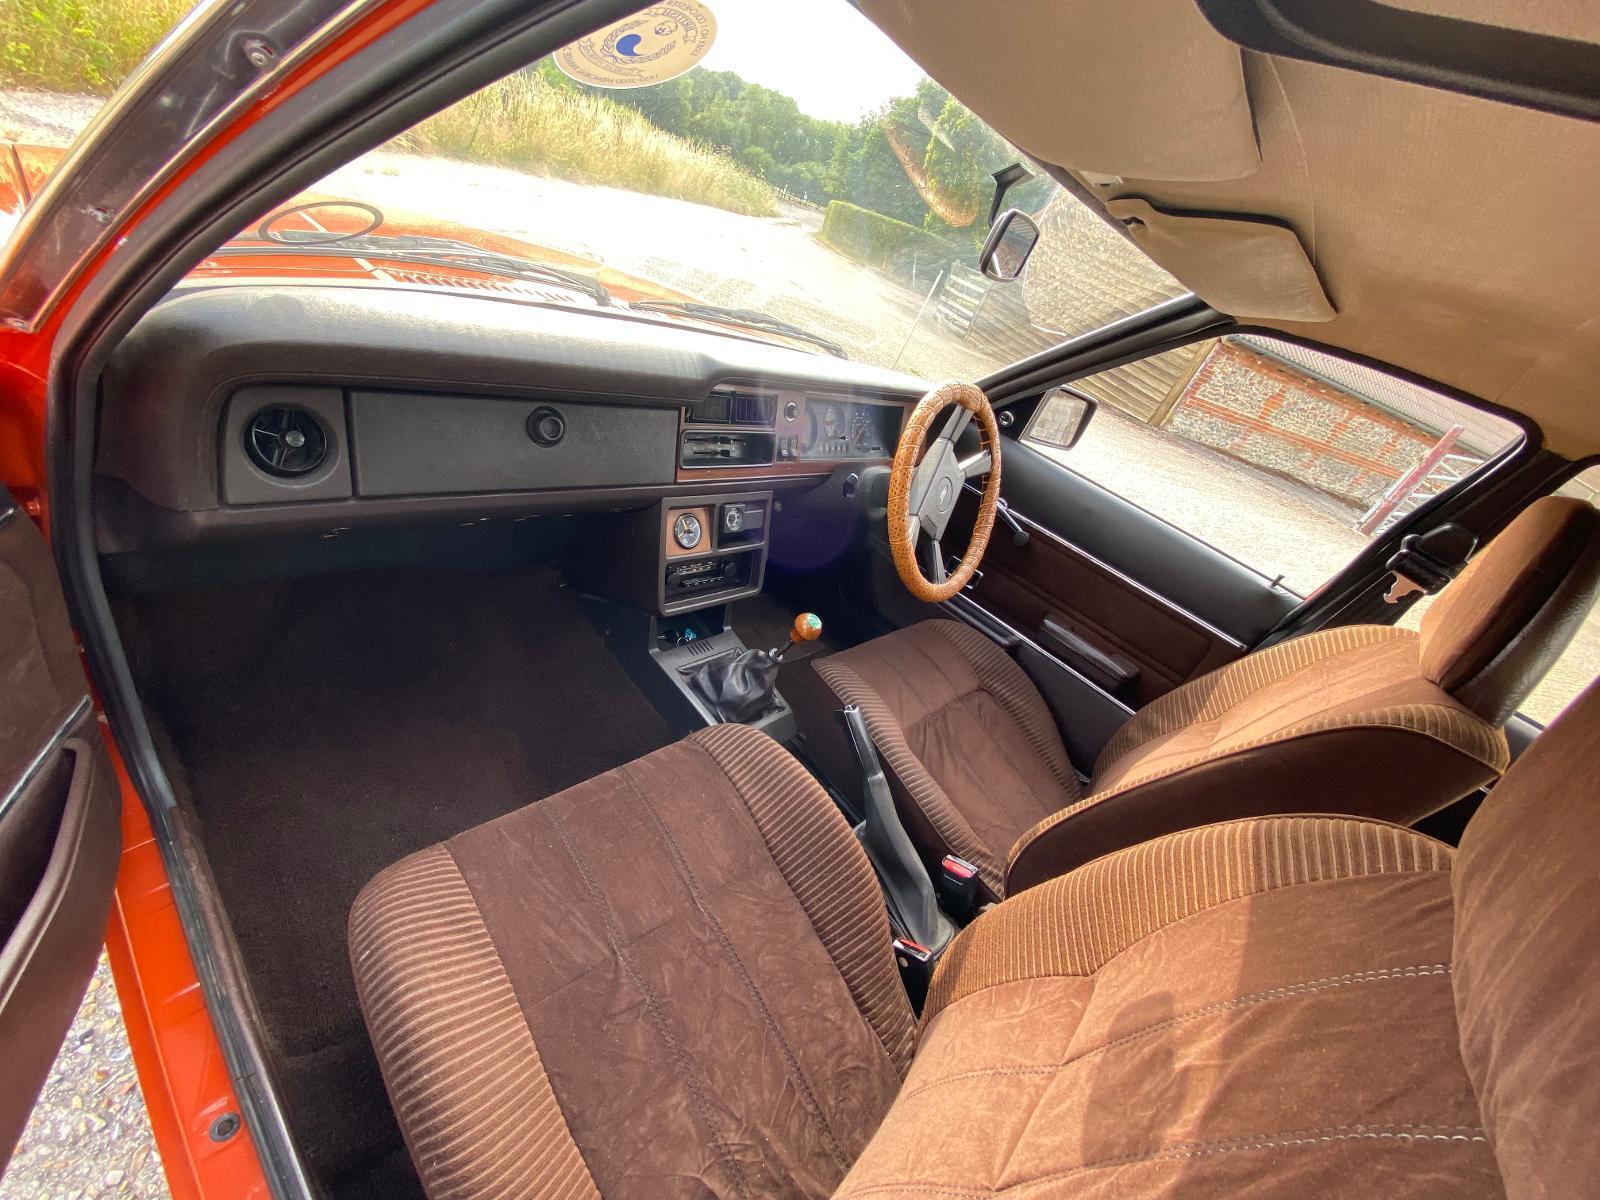 1981 Ford Cortina interior